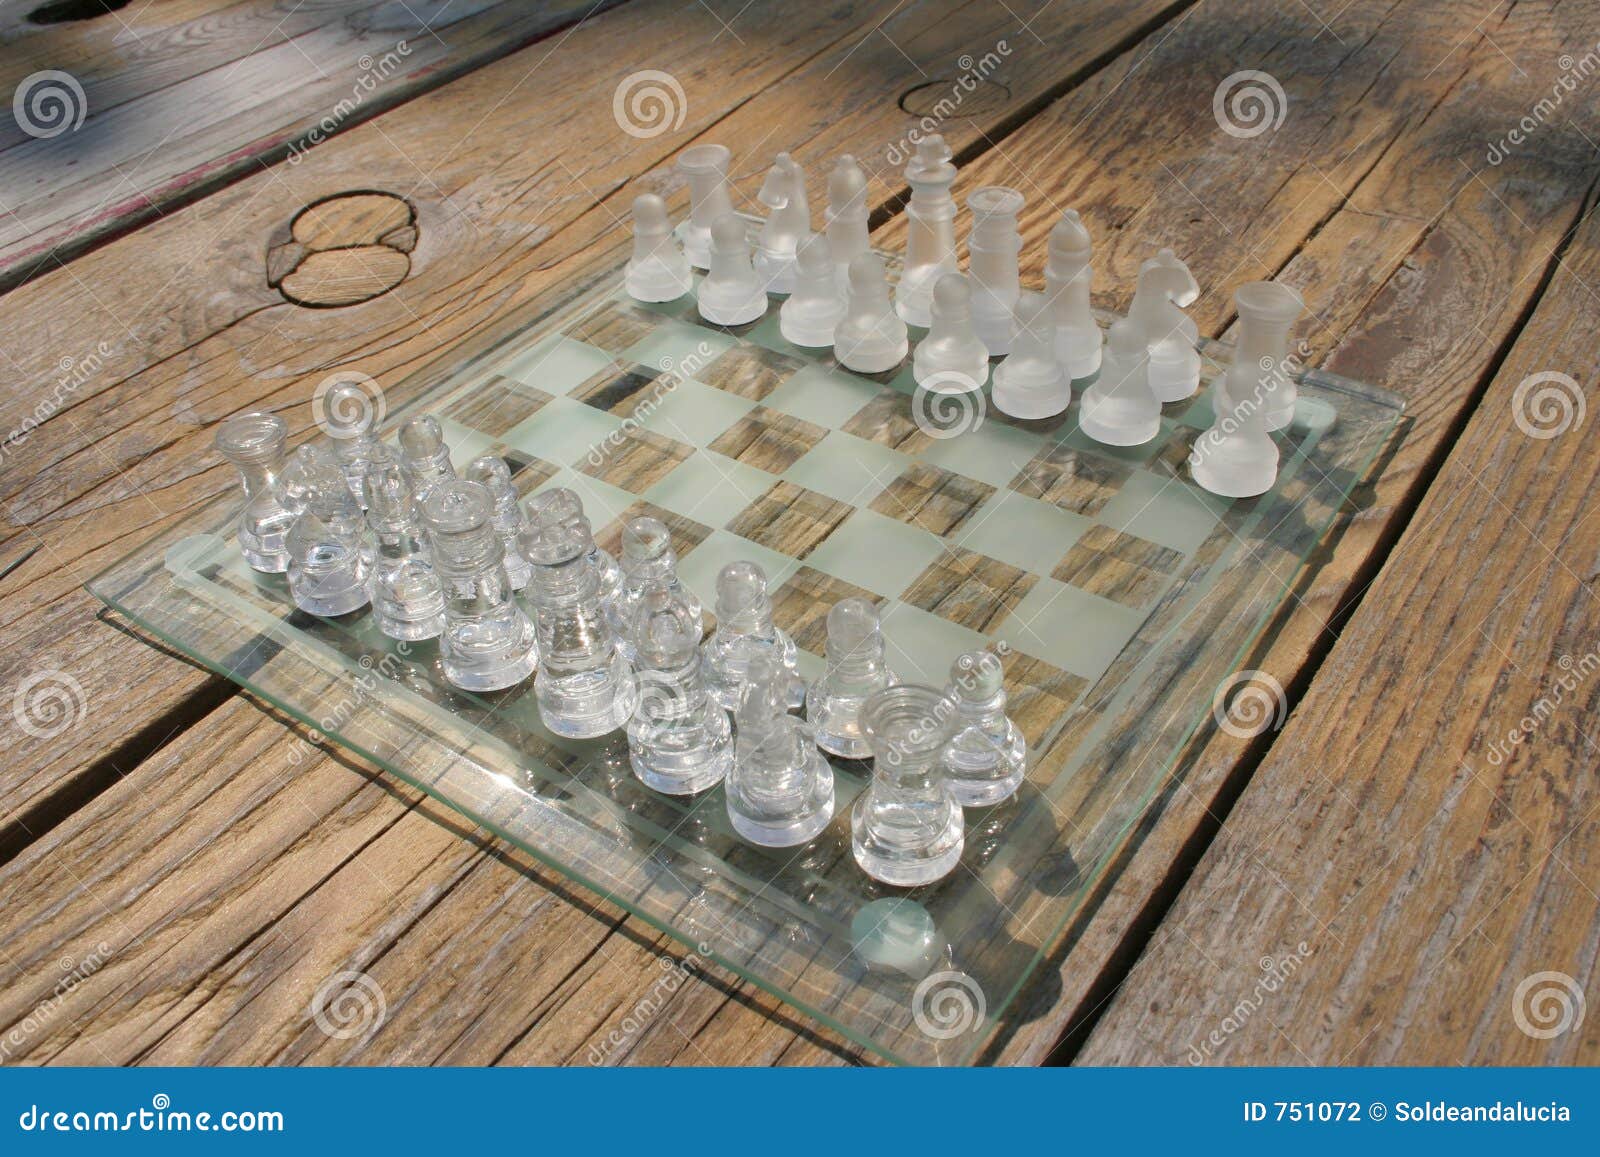 Kostenloses Schachspiel